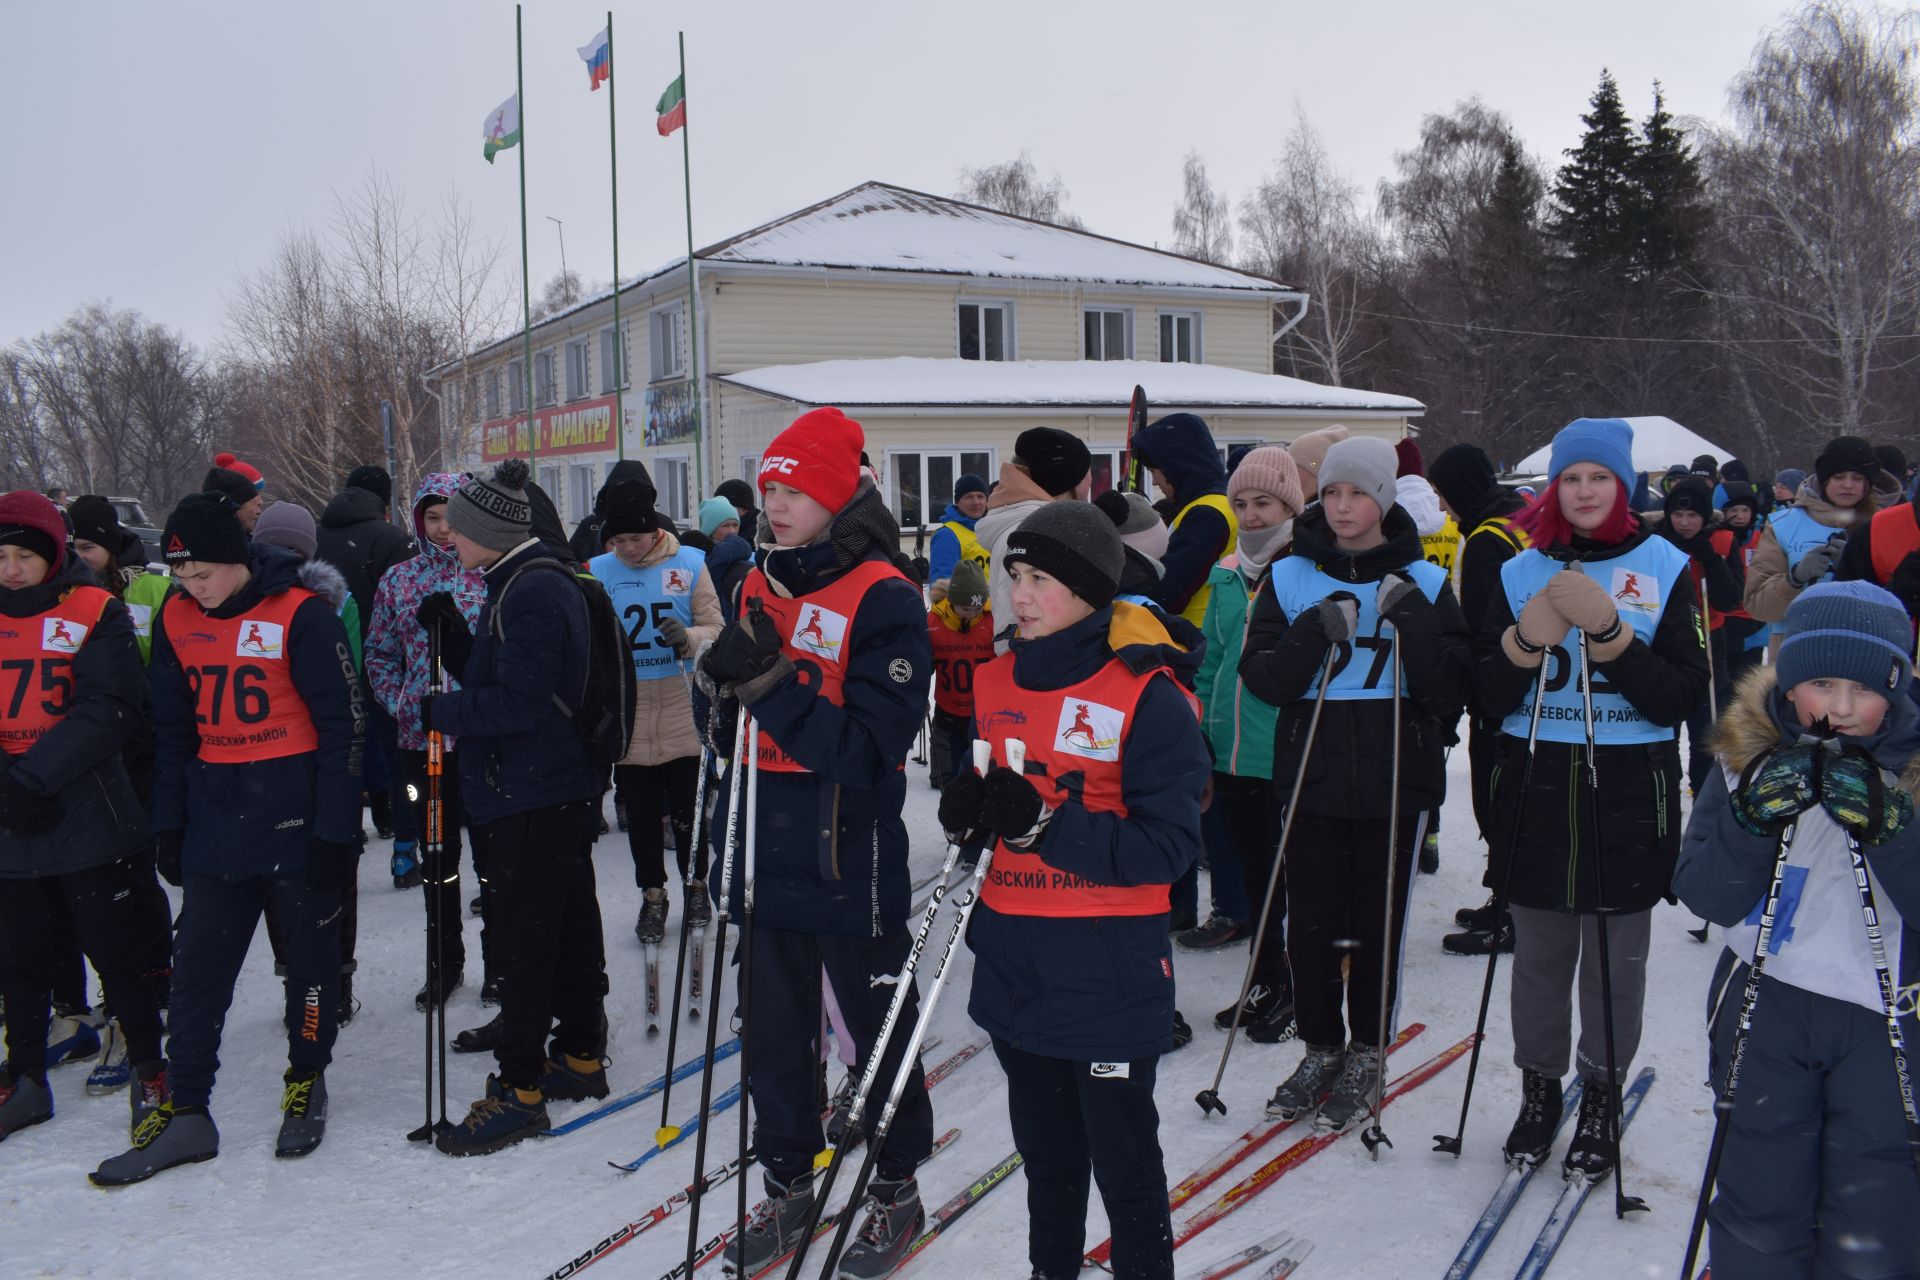 Около двухсот пятидесяти алексеевцев приняли участие в «Лыжне России»